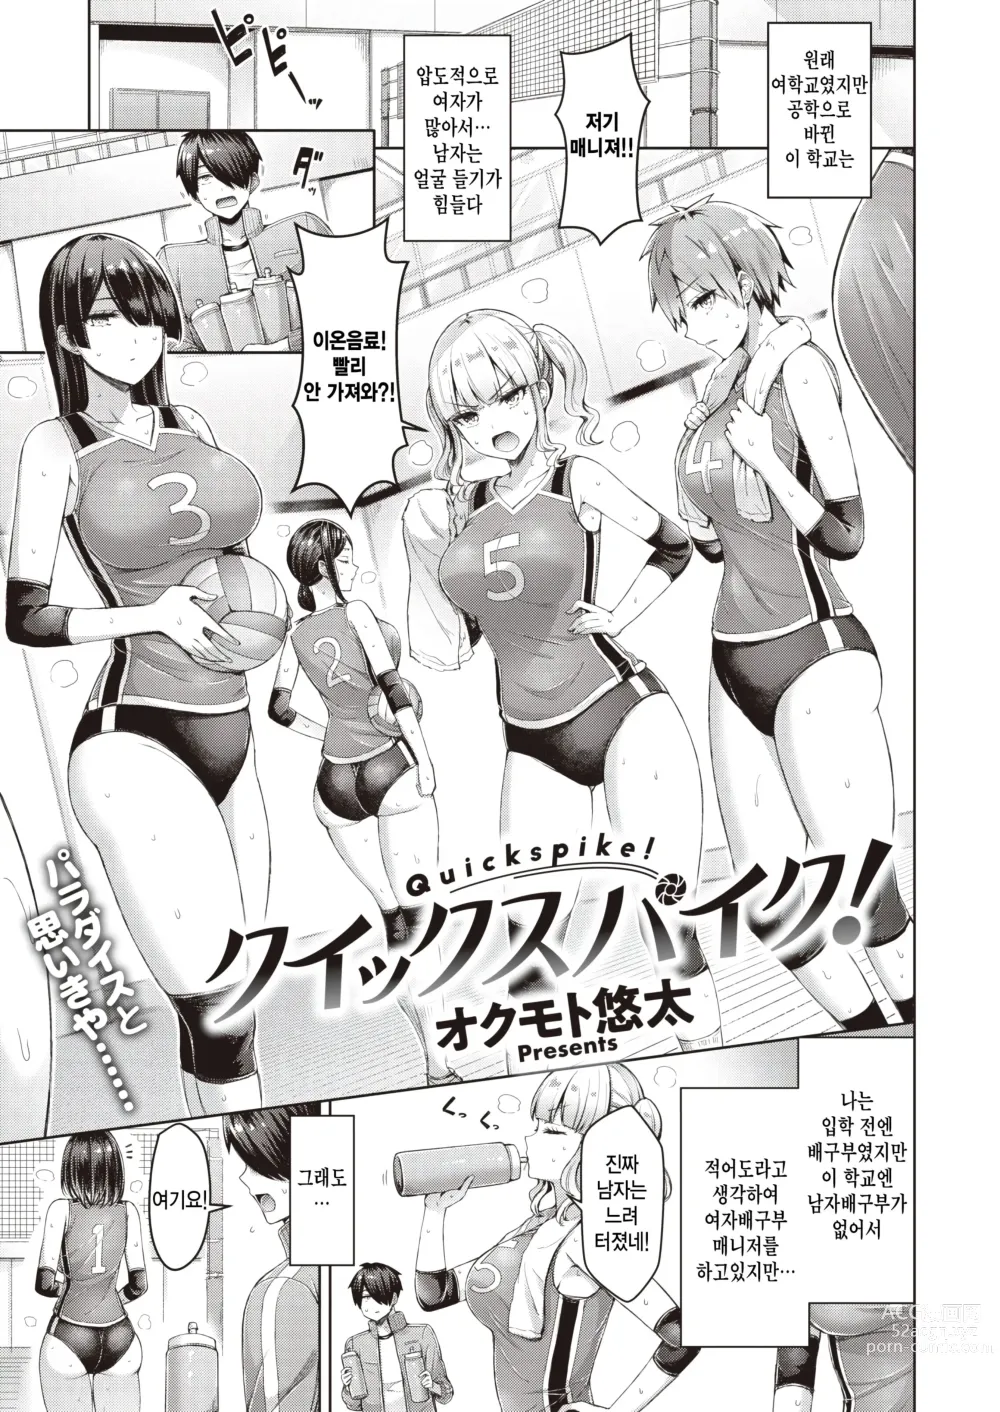 Page 1 of manga Quickspike!